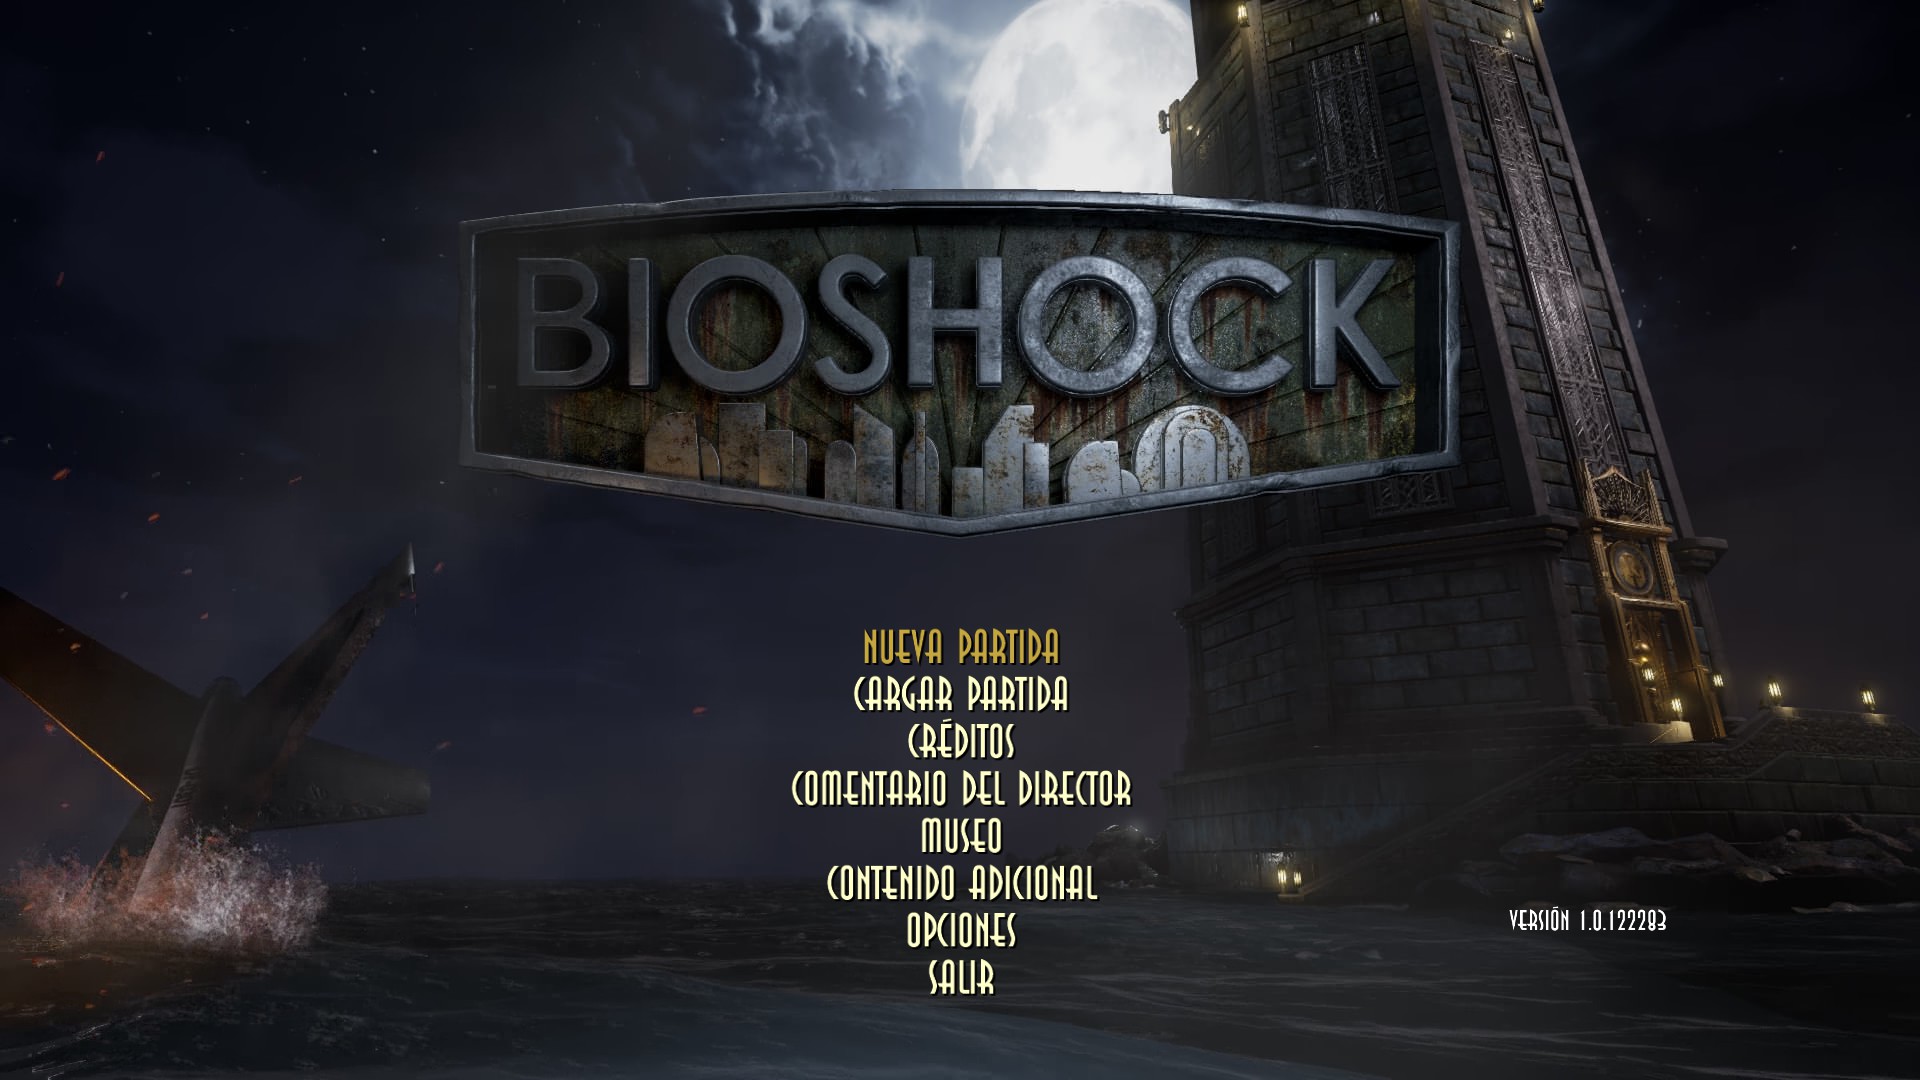 bioshock remastered free on steam